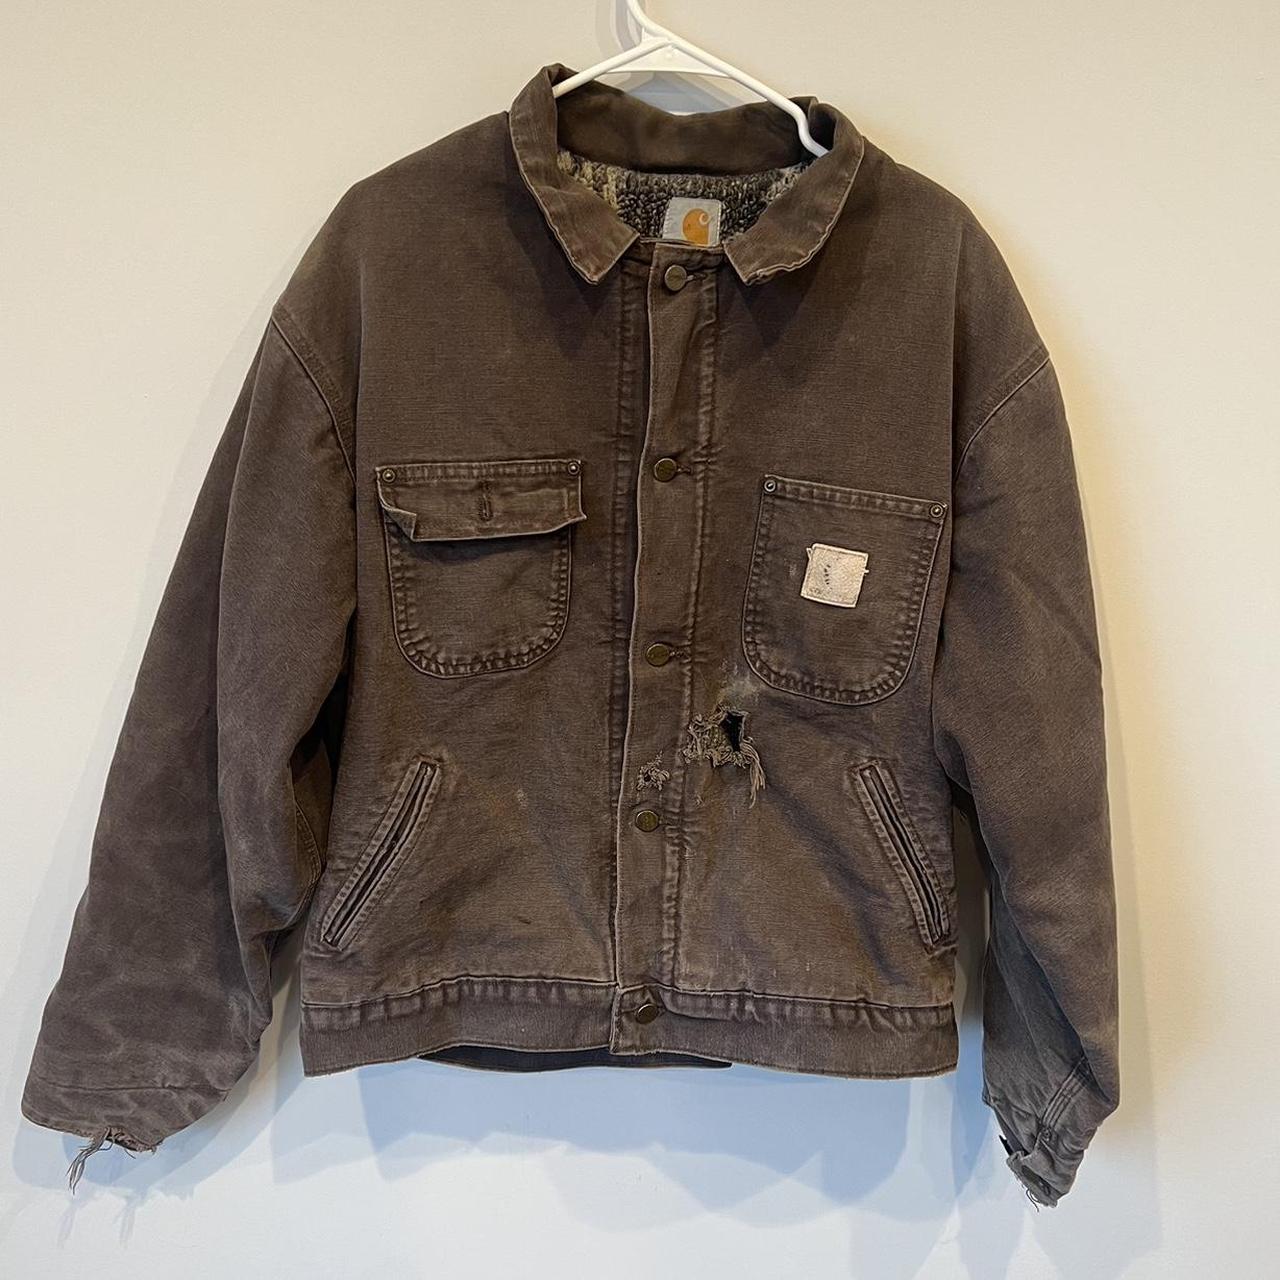 Vintage Carhartt Detroit jacket nice color and fits... - Depop